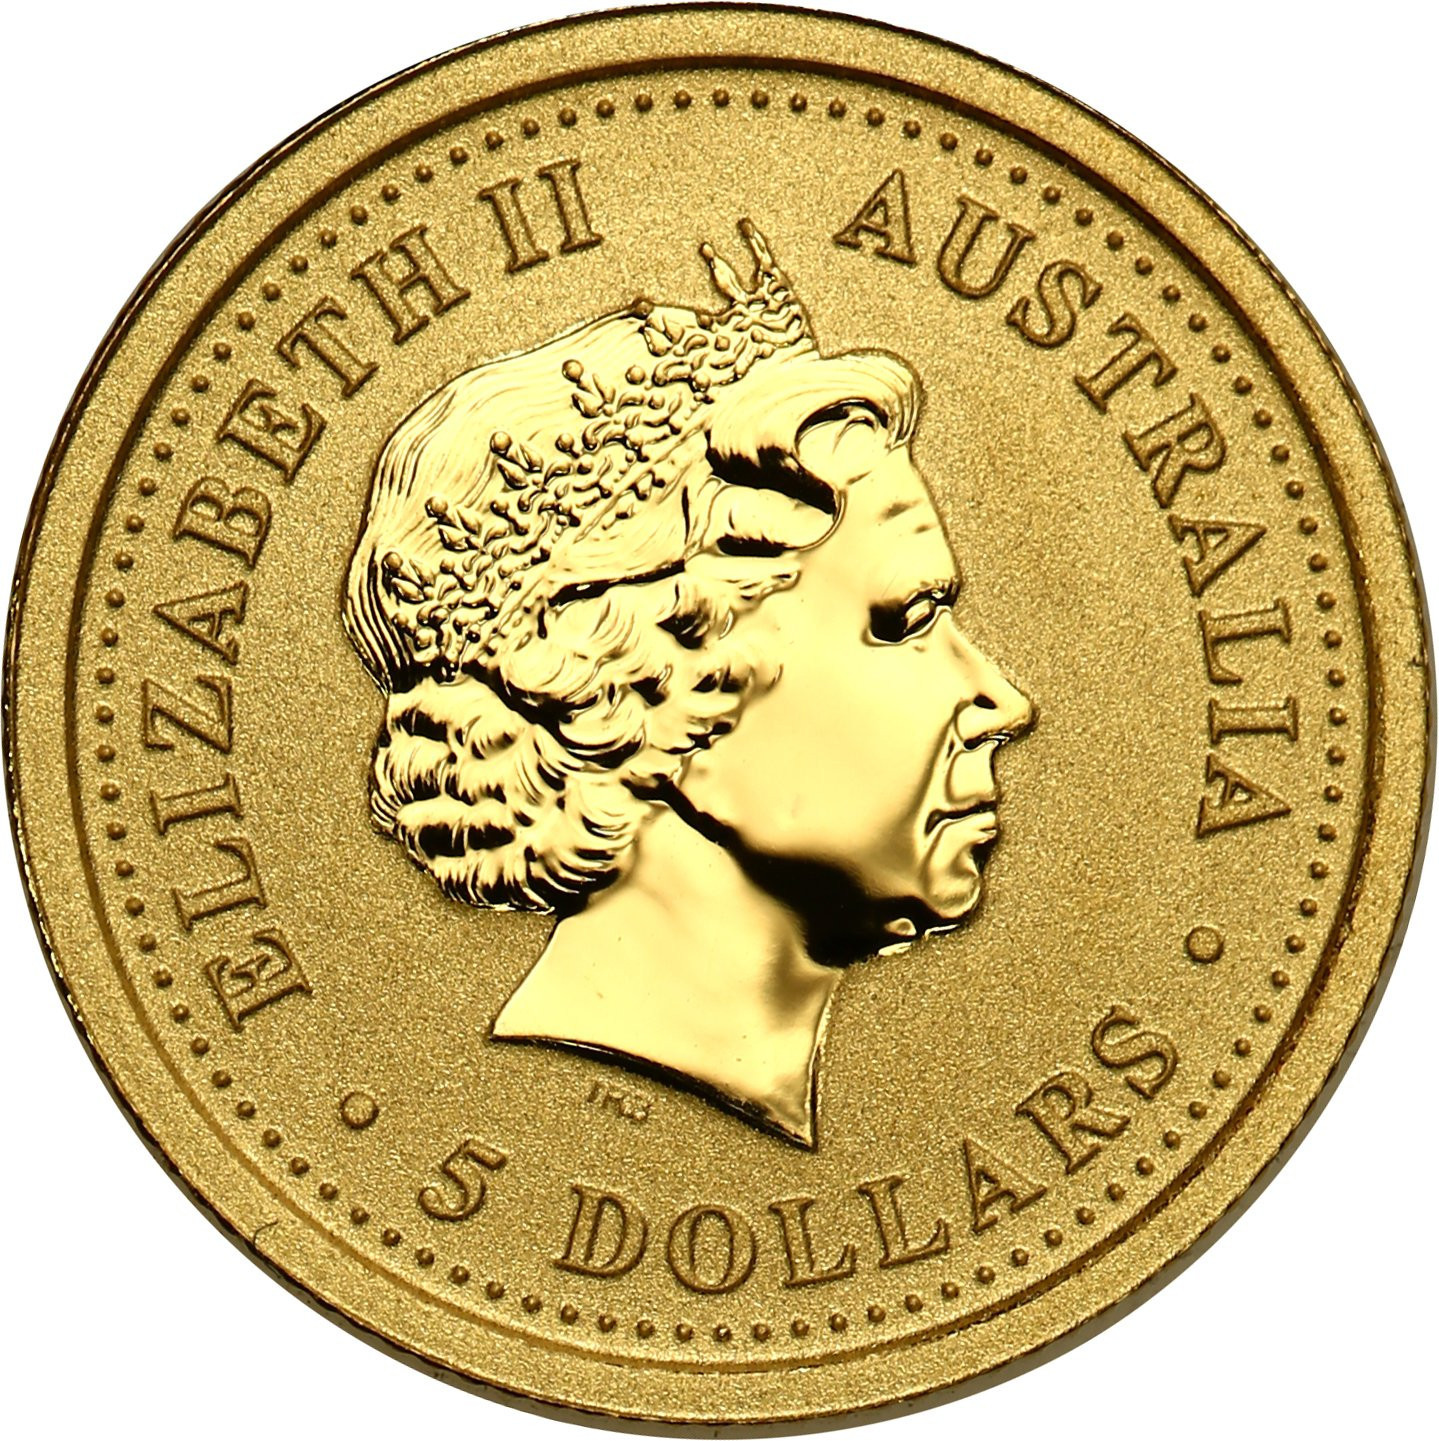 Australia. Złote 5 dolarów 1999 - ROK KRÓLKA  - 1/20 uncji złota